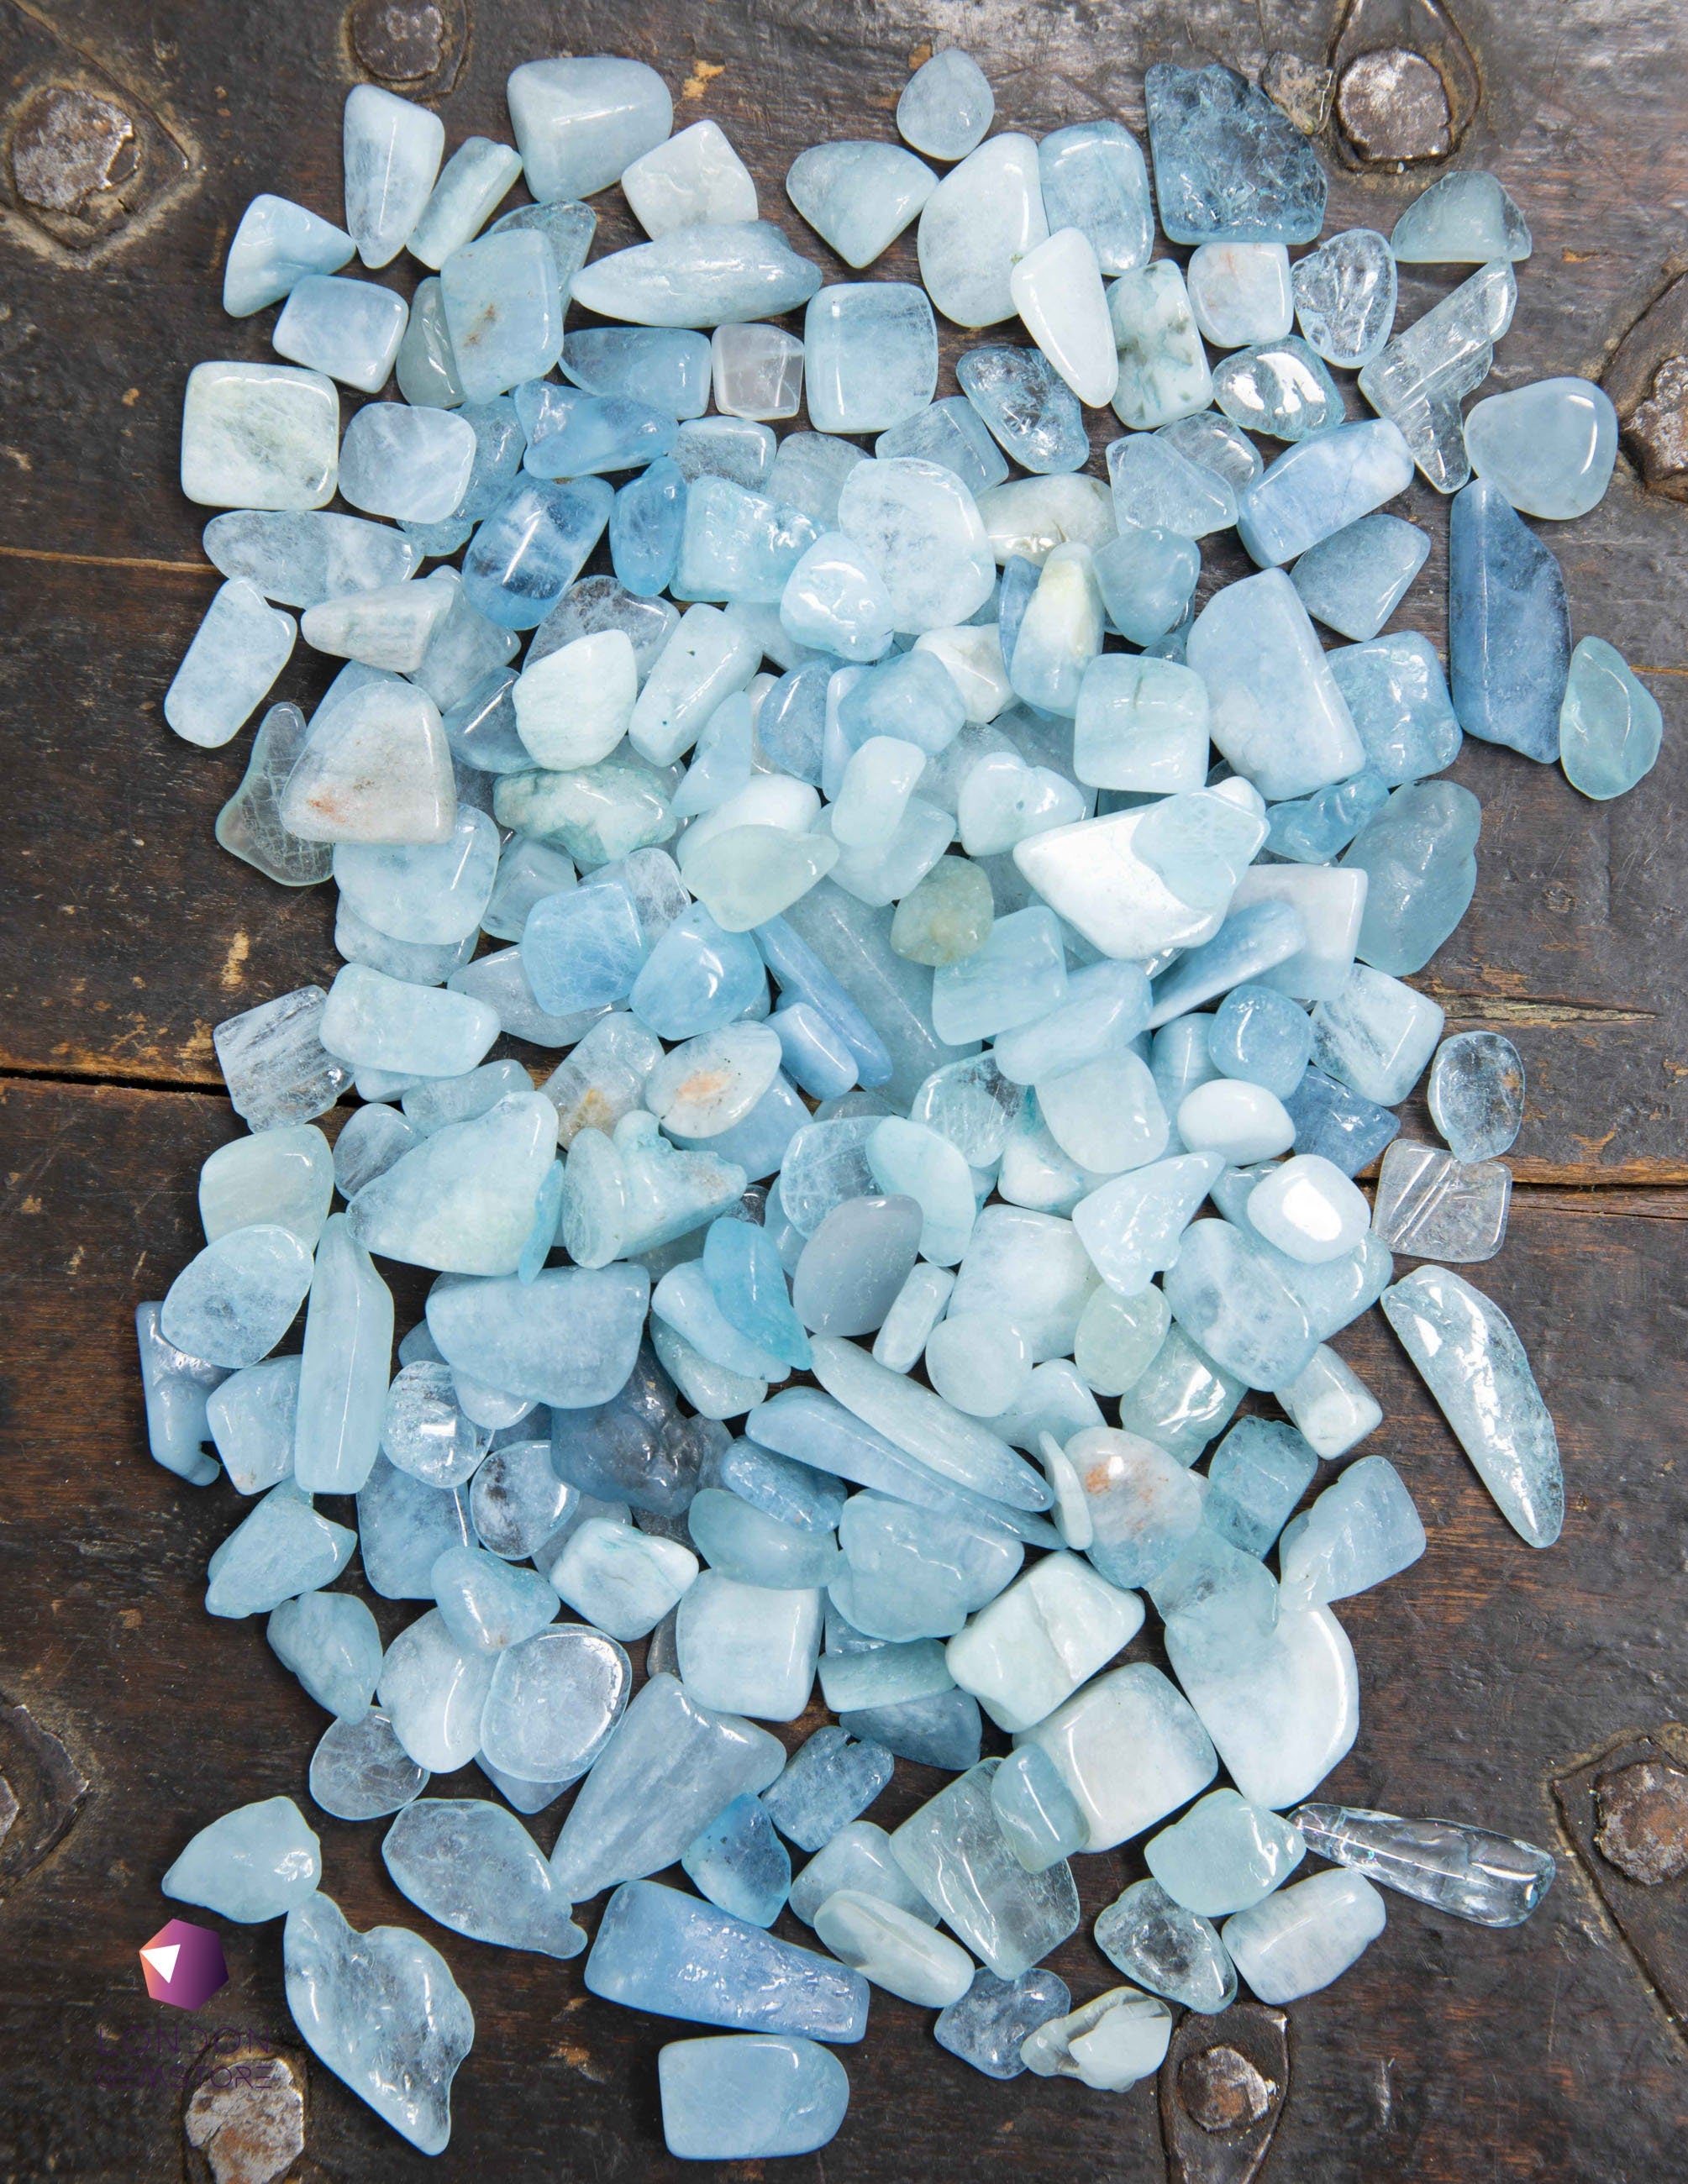 Aquamarine Crystal Gravel for Aquarium Decor